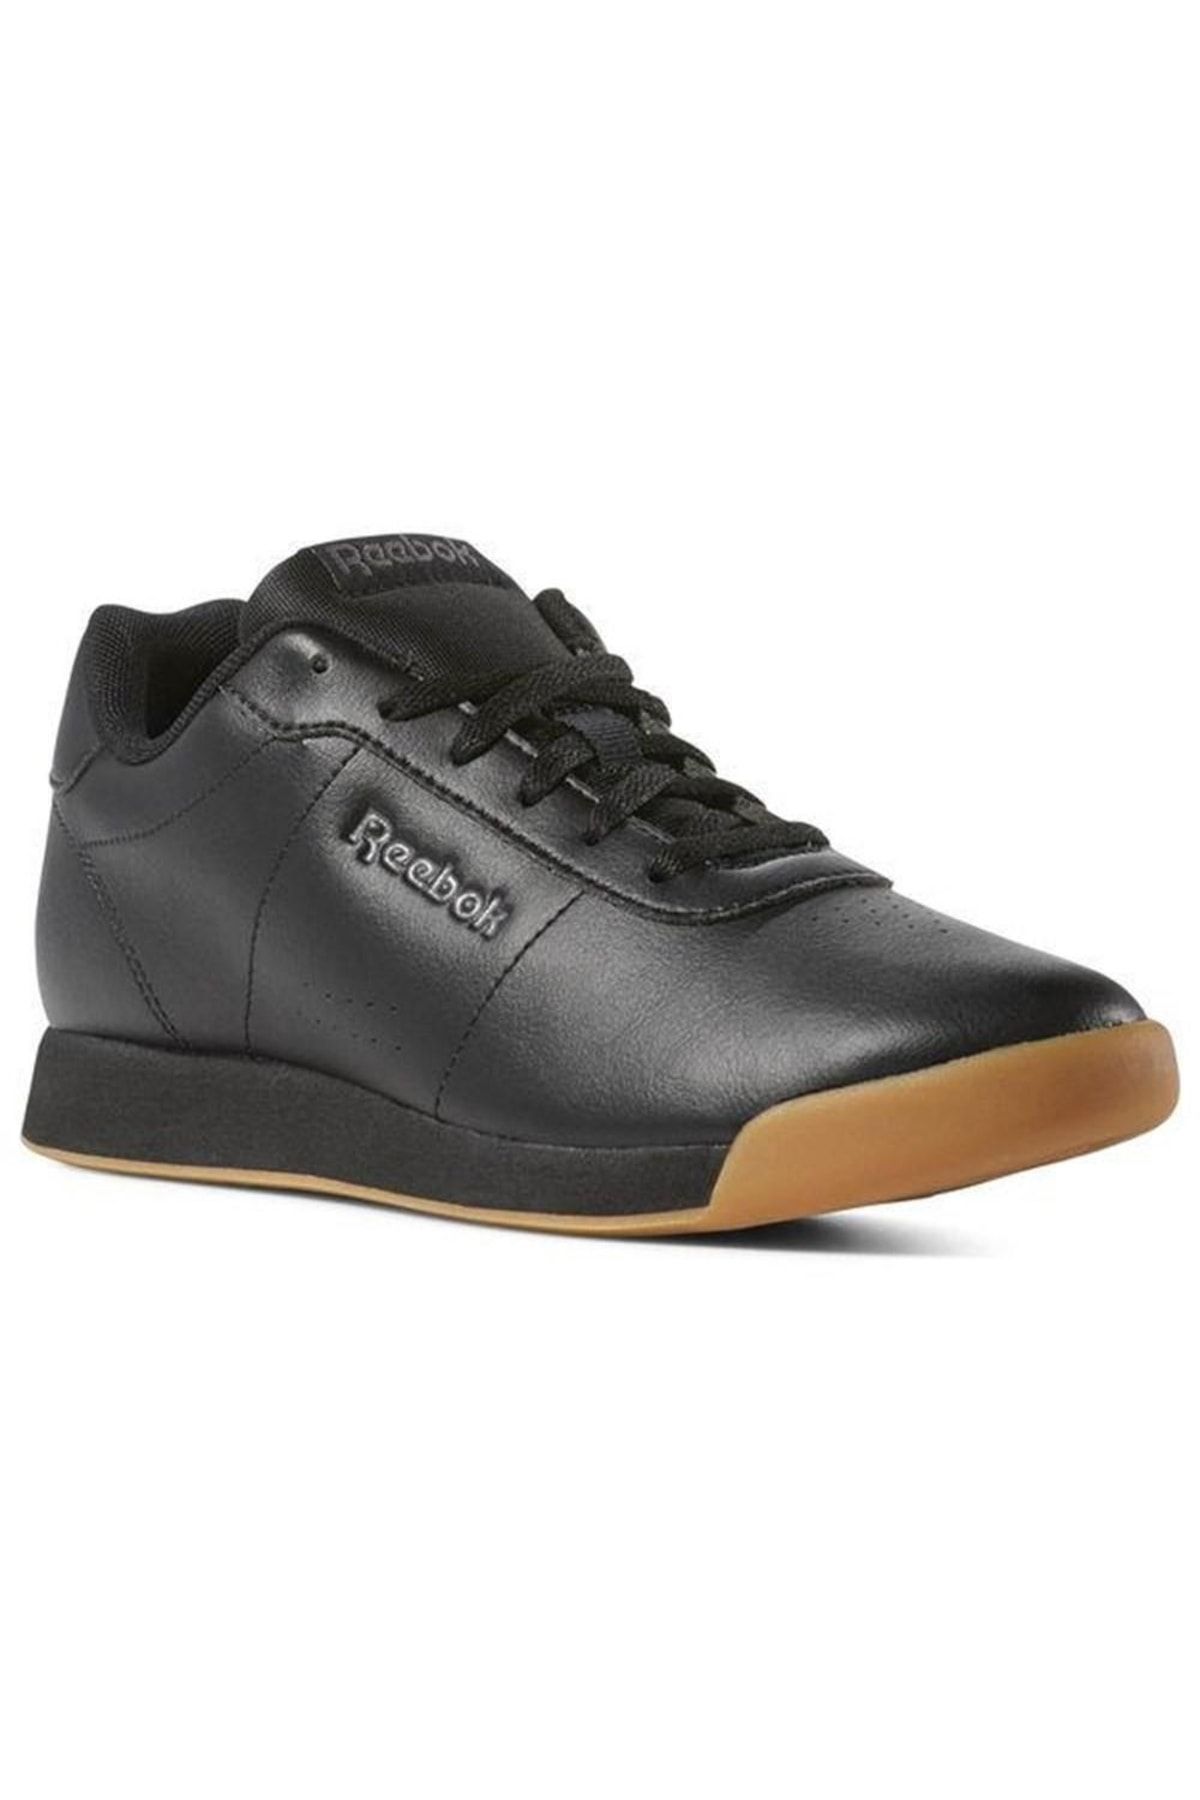 Reebok DV3816 Siyah Kadın Sneaker Ayakkabı 100407825